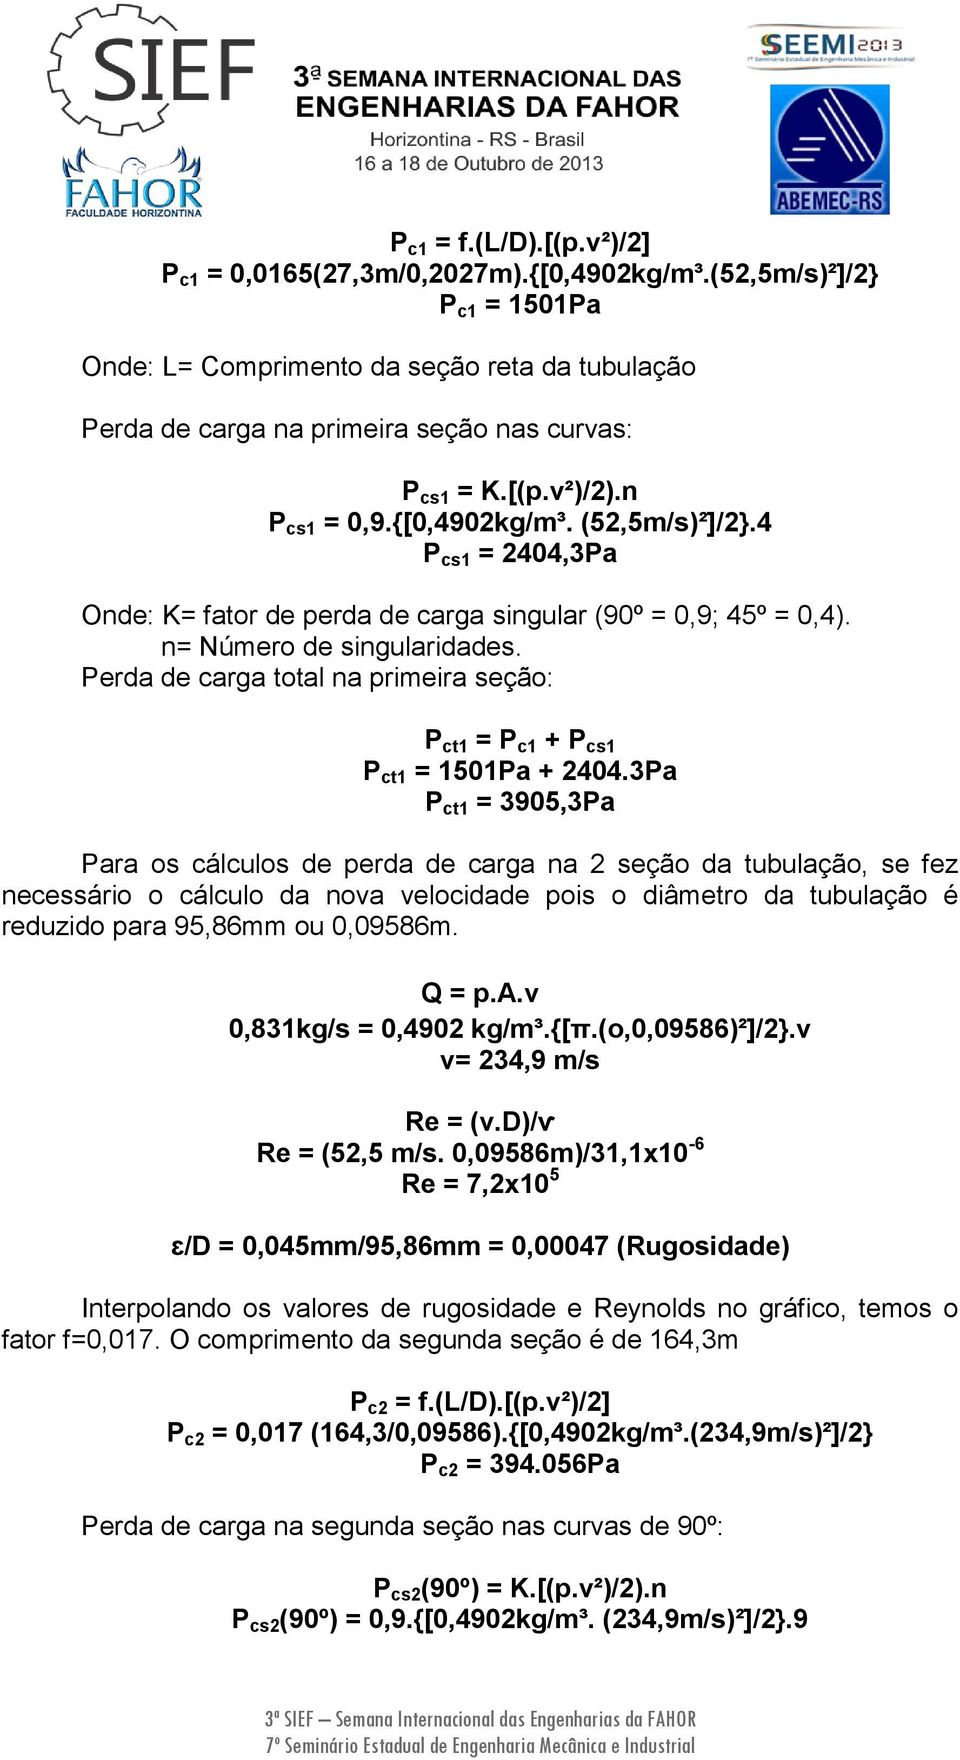 4 P cs1 = 2404,3Pa Onde: K= fator de perda de carga singular (90º = 0,9; 45º = 0,4). n= Número de singularidades. Perda de carga total na primeira seção: P ct1 = P c1 + P cs1 P ct1 = 1501Pa + 2404.